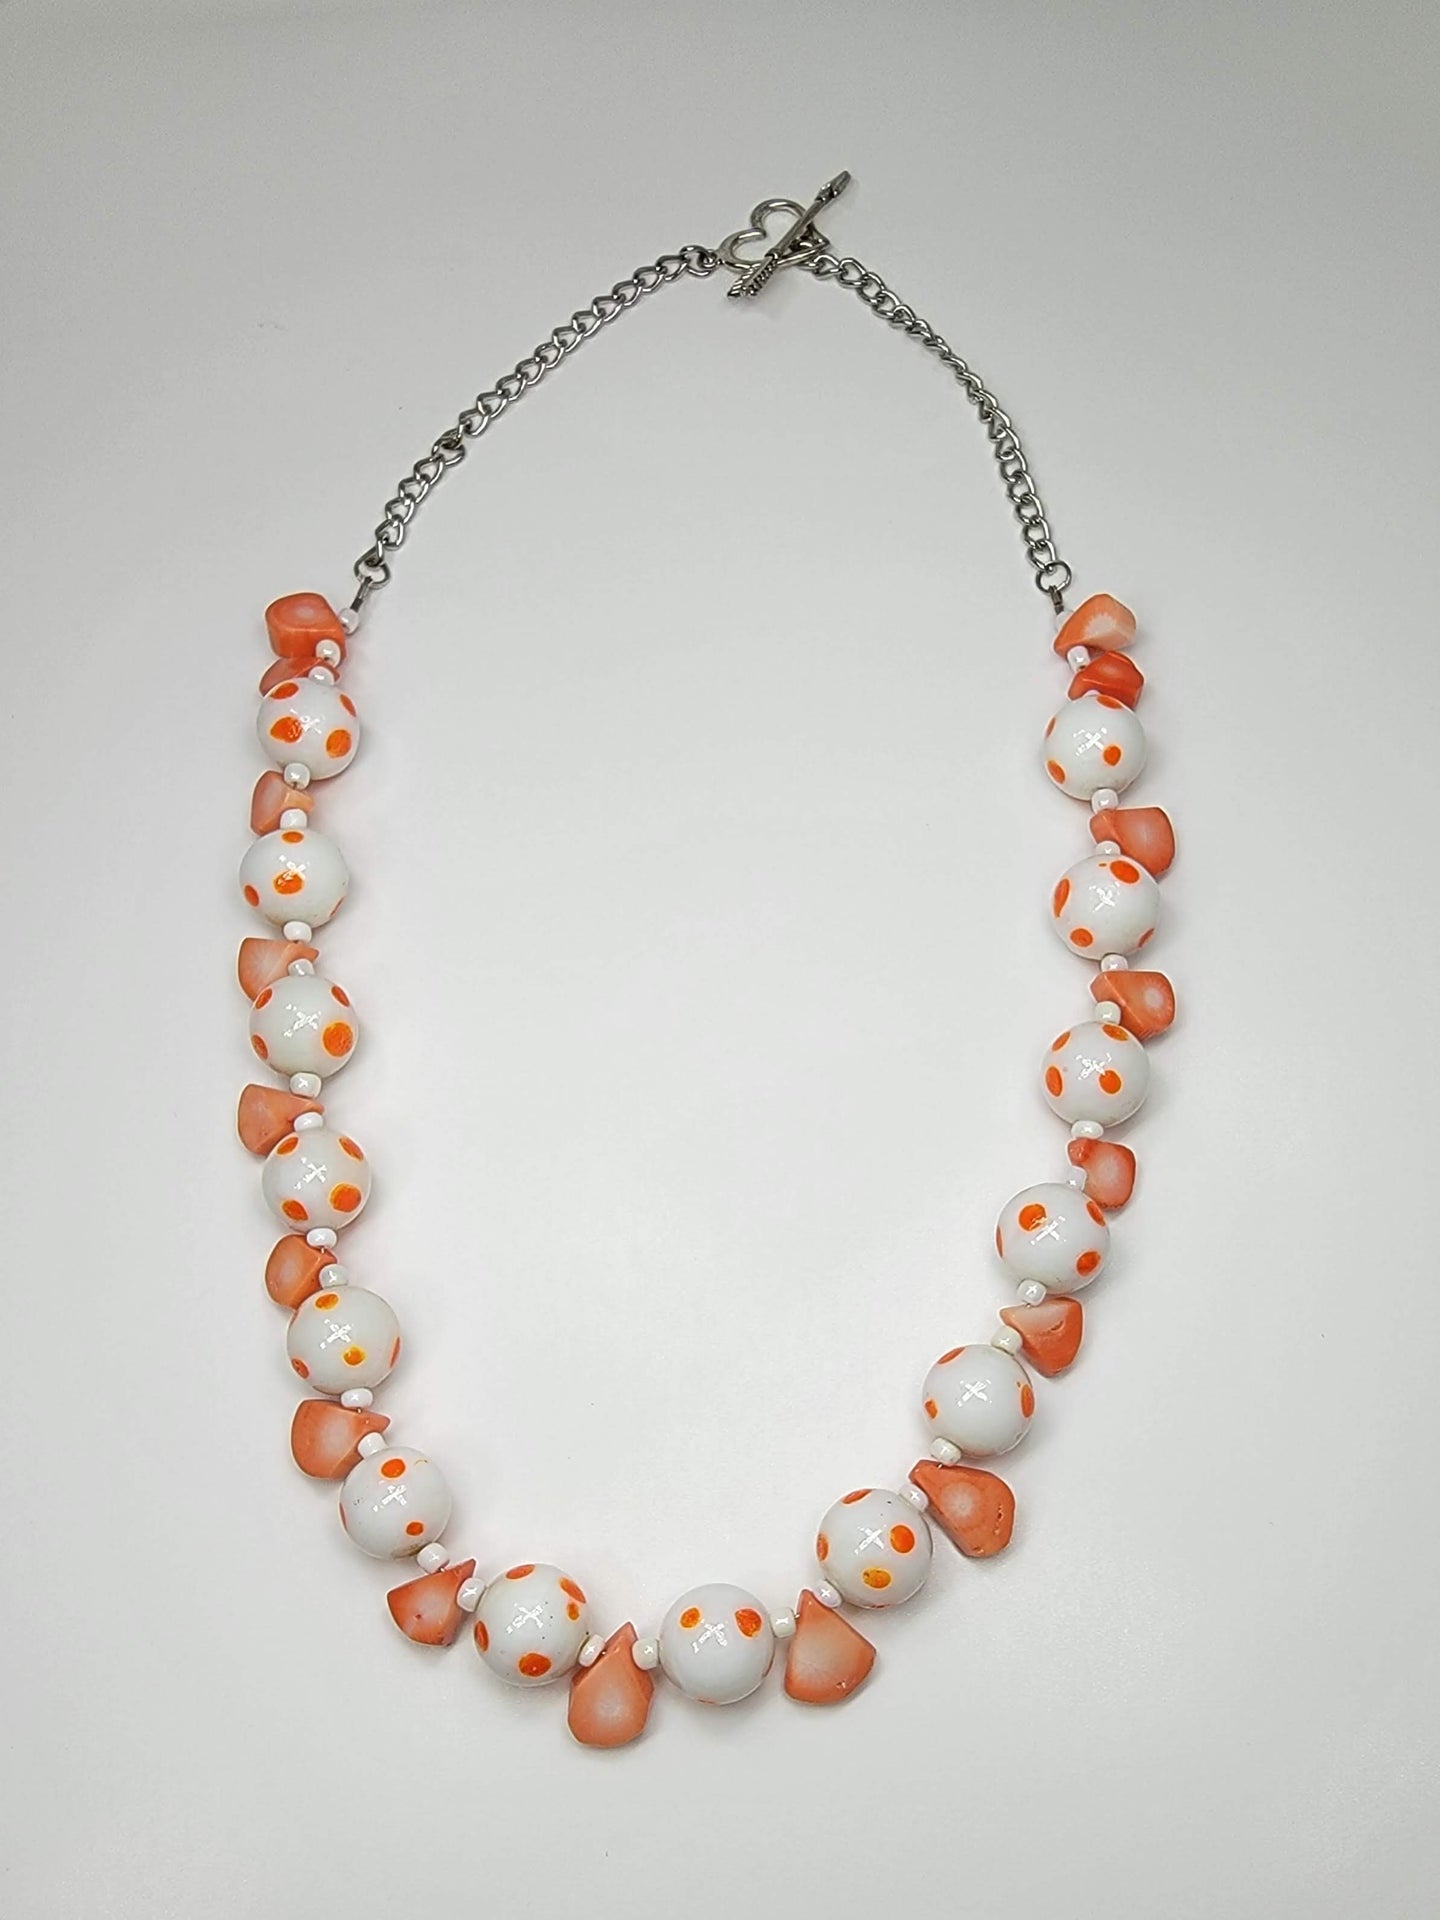 Orange & Polka Dot Necklace - One of a kind